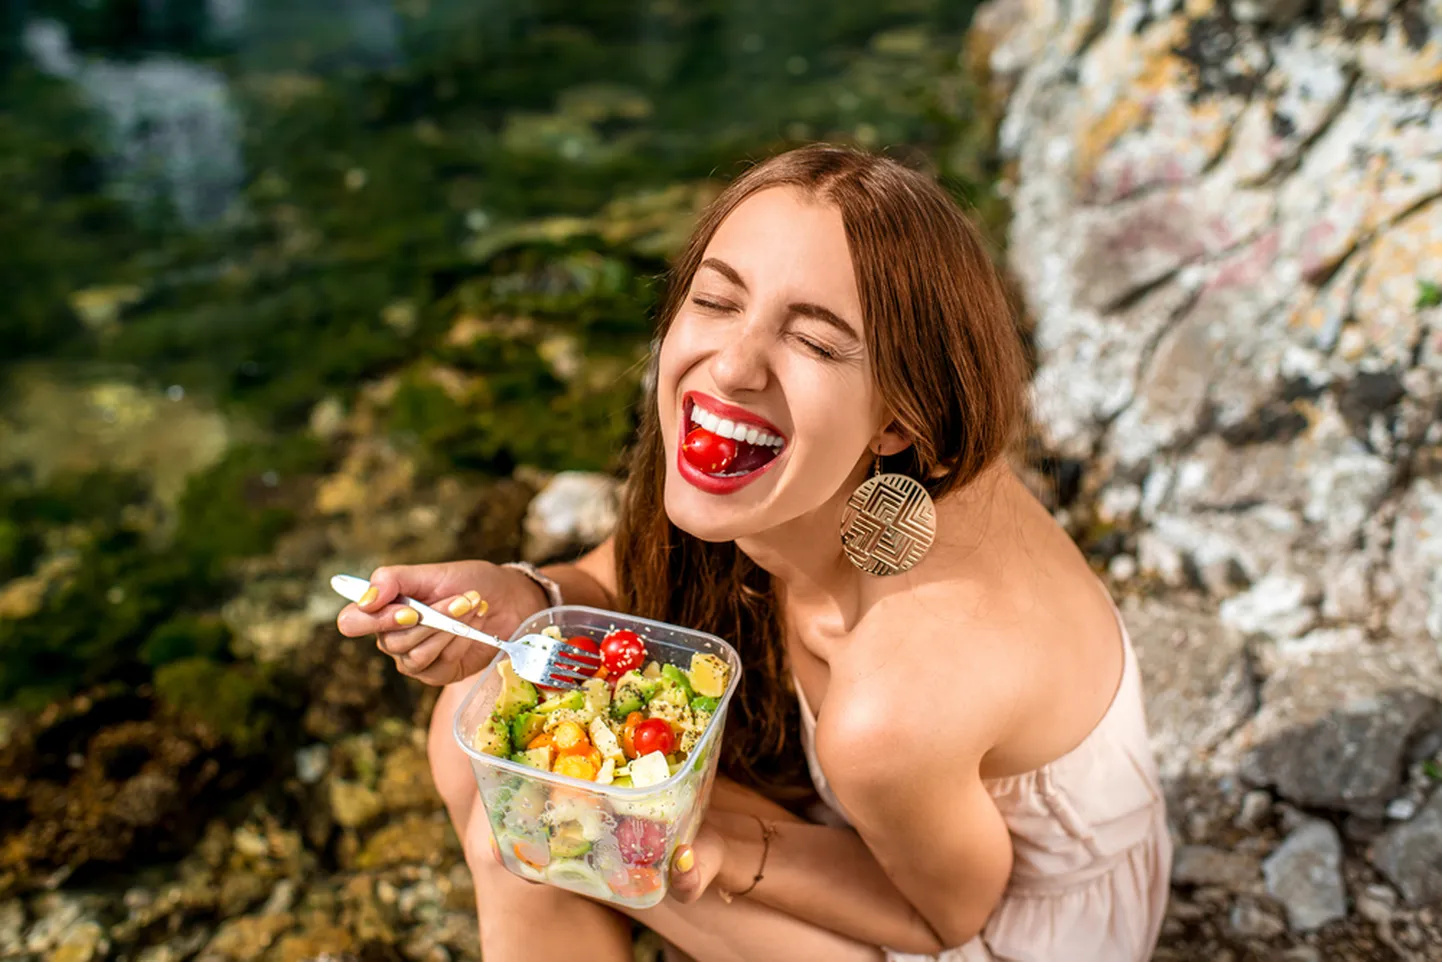 Toitumisteadlane jagab: neli vähetuntud fakti maitsete tajumise kohta